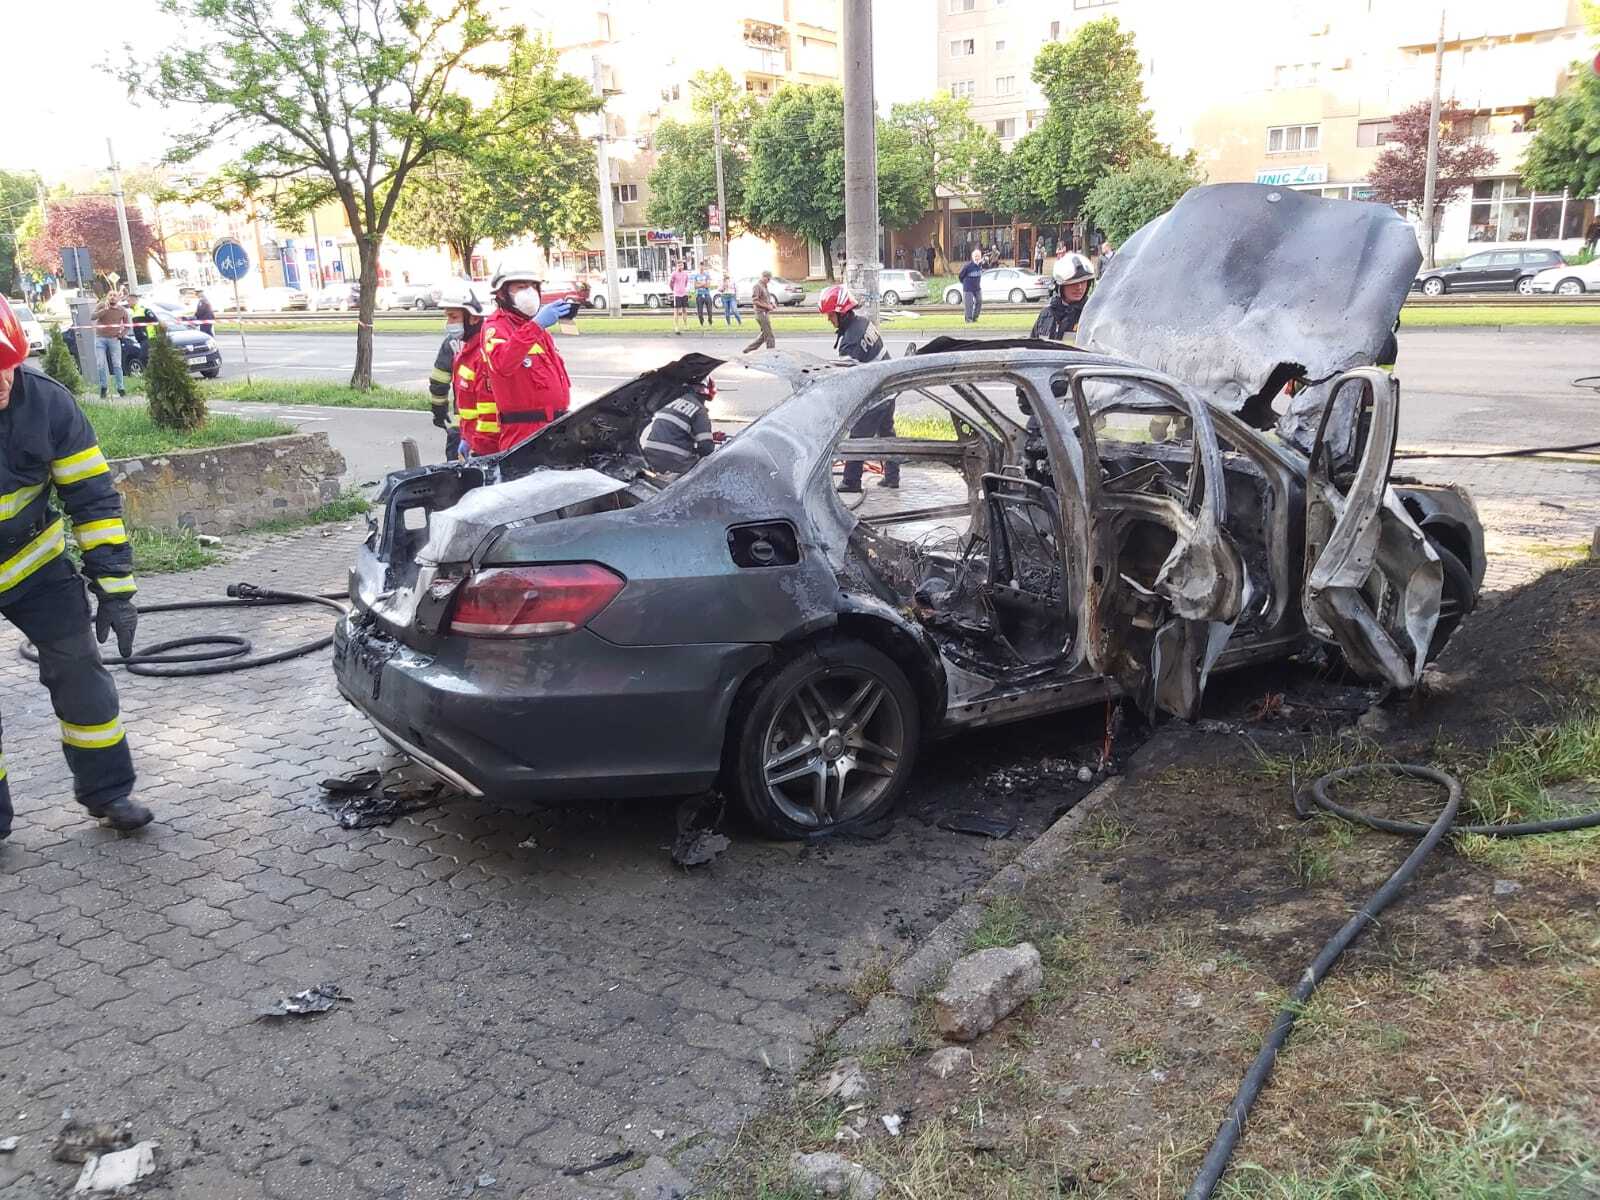 Surse: S-au găsit urme de praf de pușcă în mașina omului de afaceri Ioan Crișan, după explozia de sâmbătă dimineață